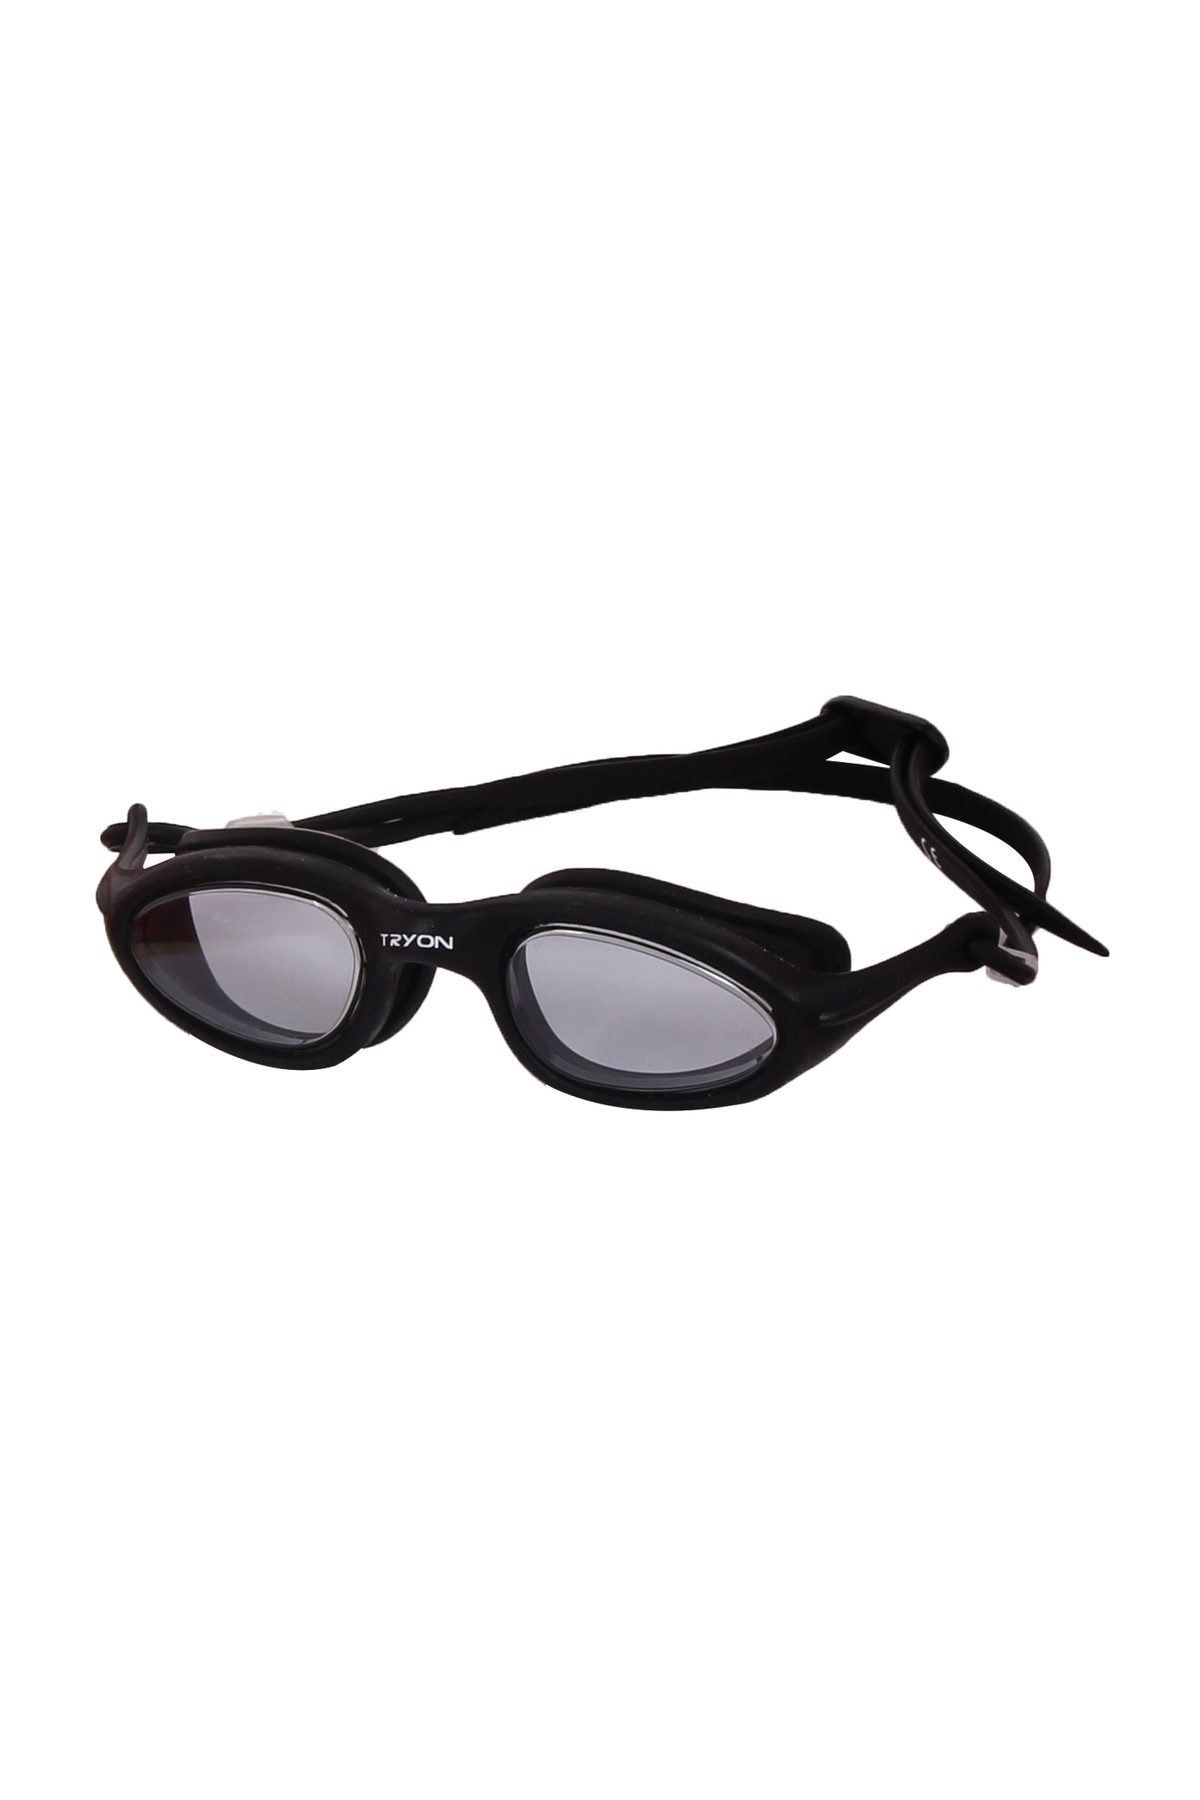 TRYON Yüzücü Gözlüğü Yg-3000